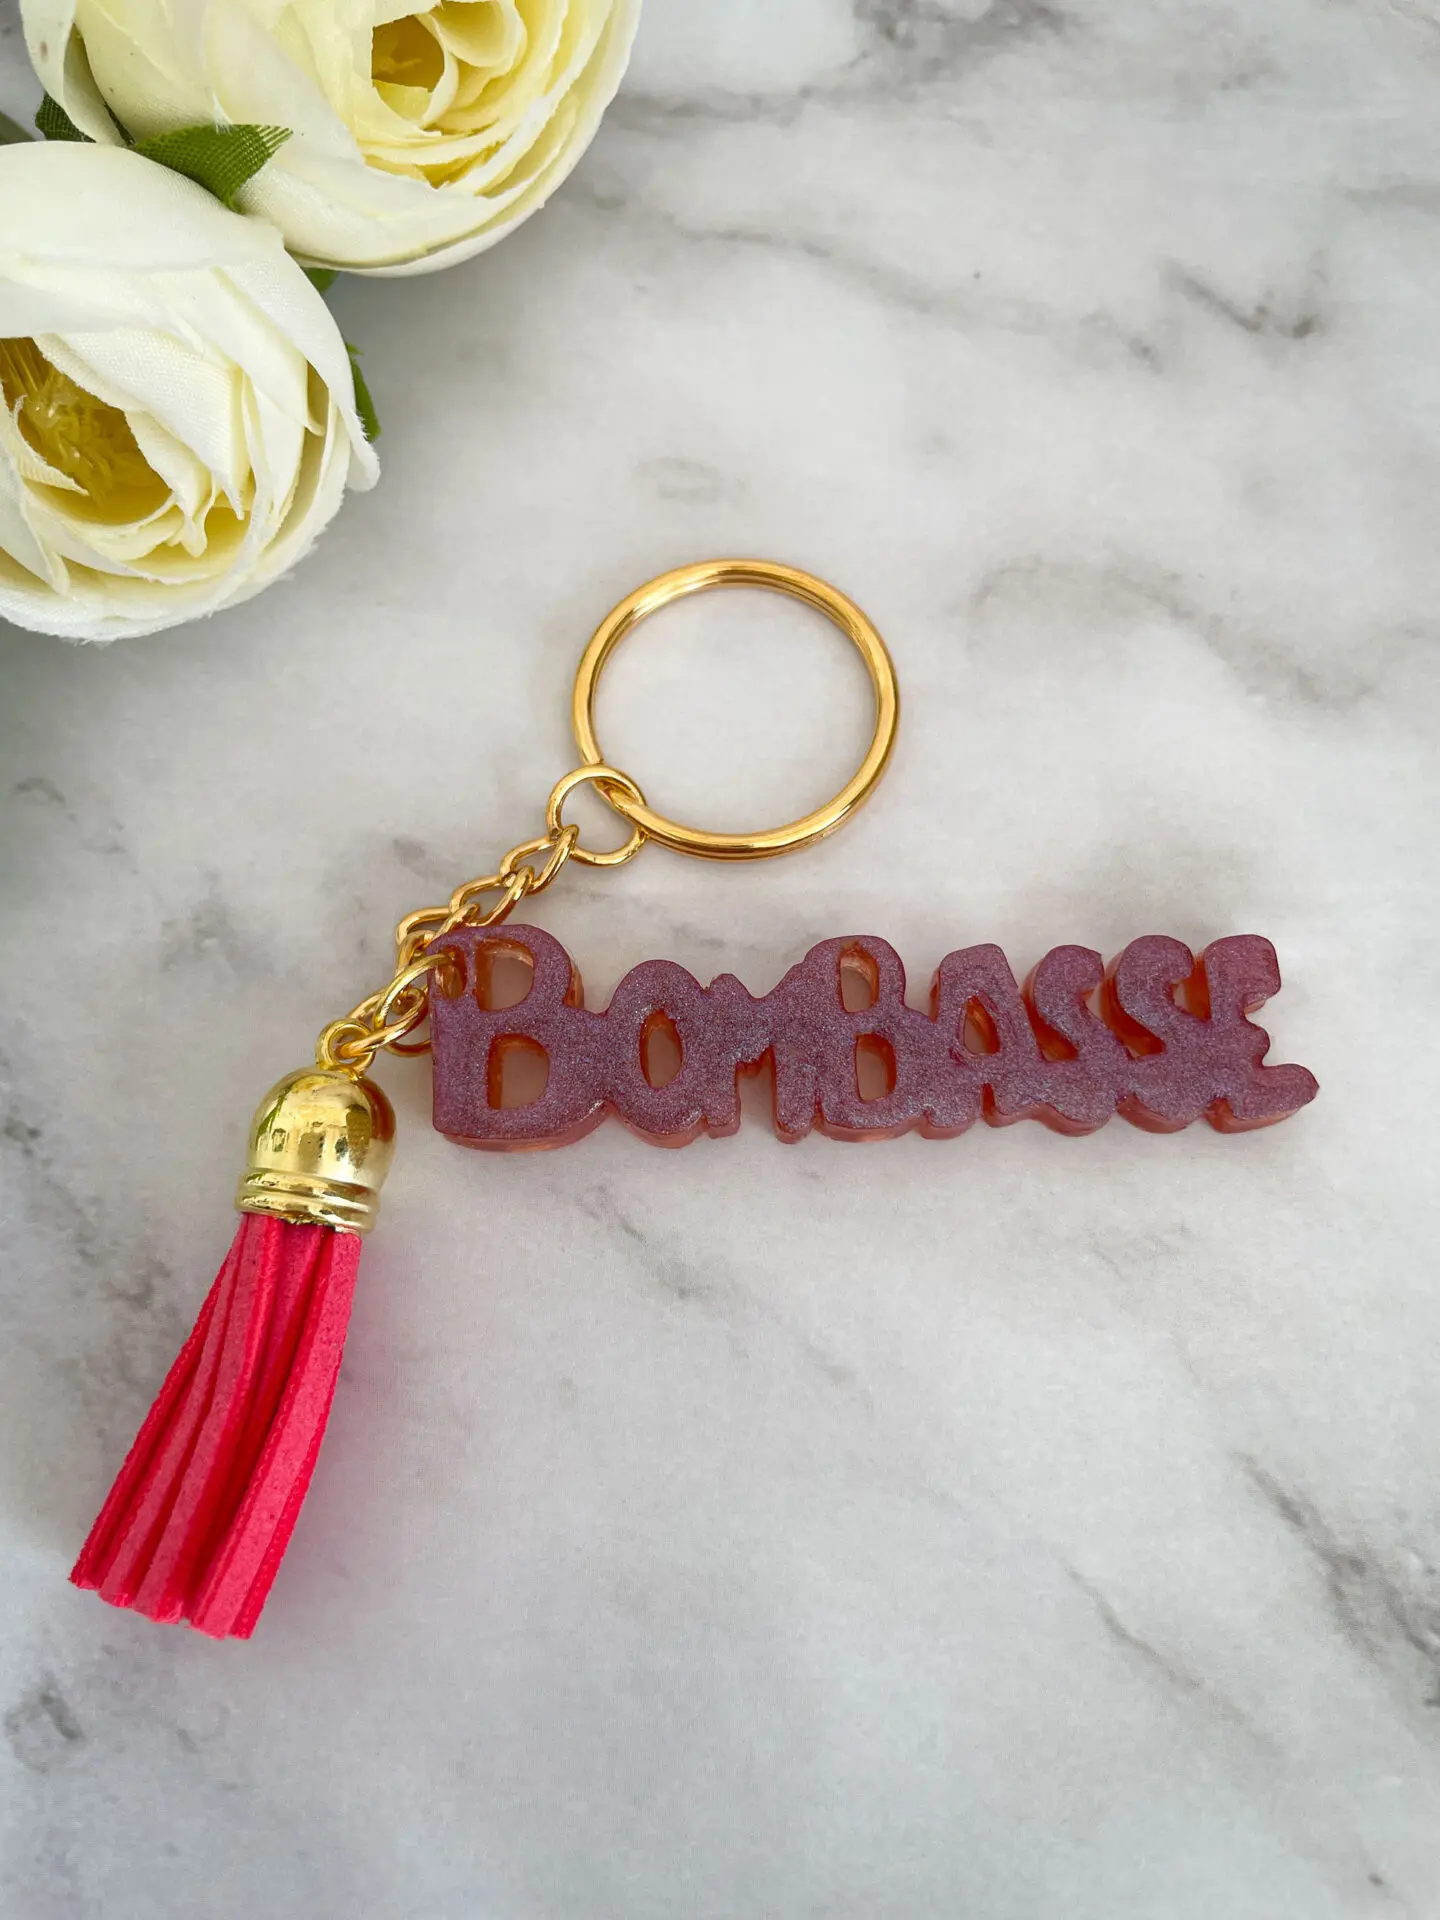 Porte clé mot - Bombasse rosé mauve - Boutique en ligne d'idées cadeau et de décoration